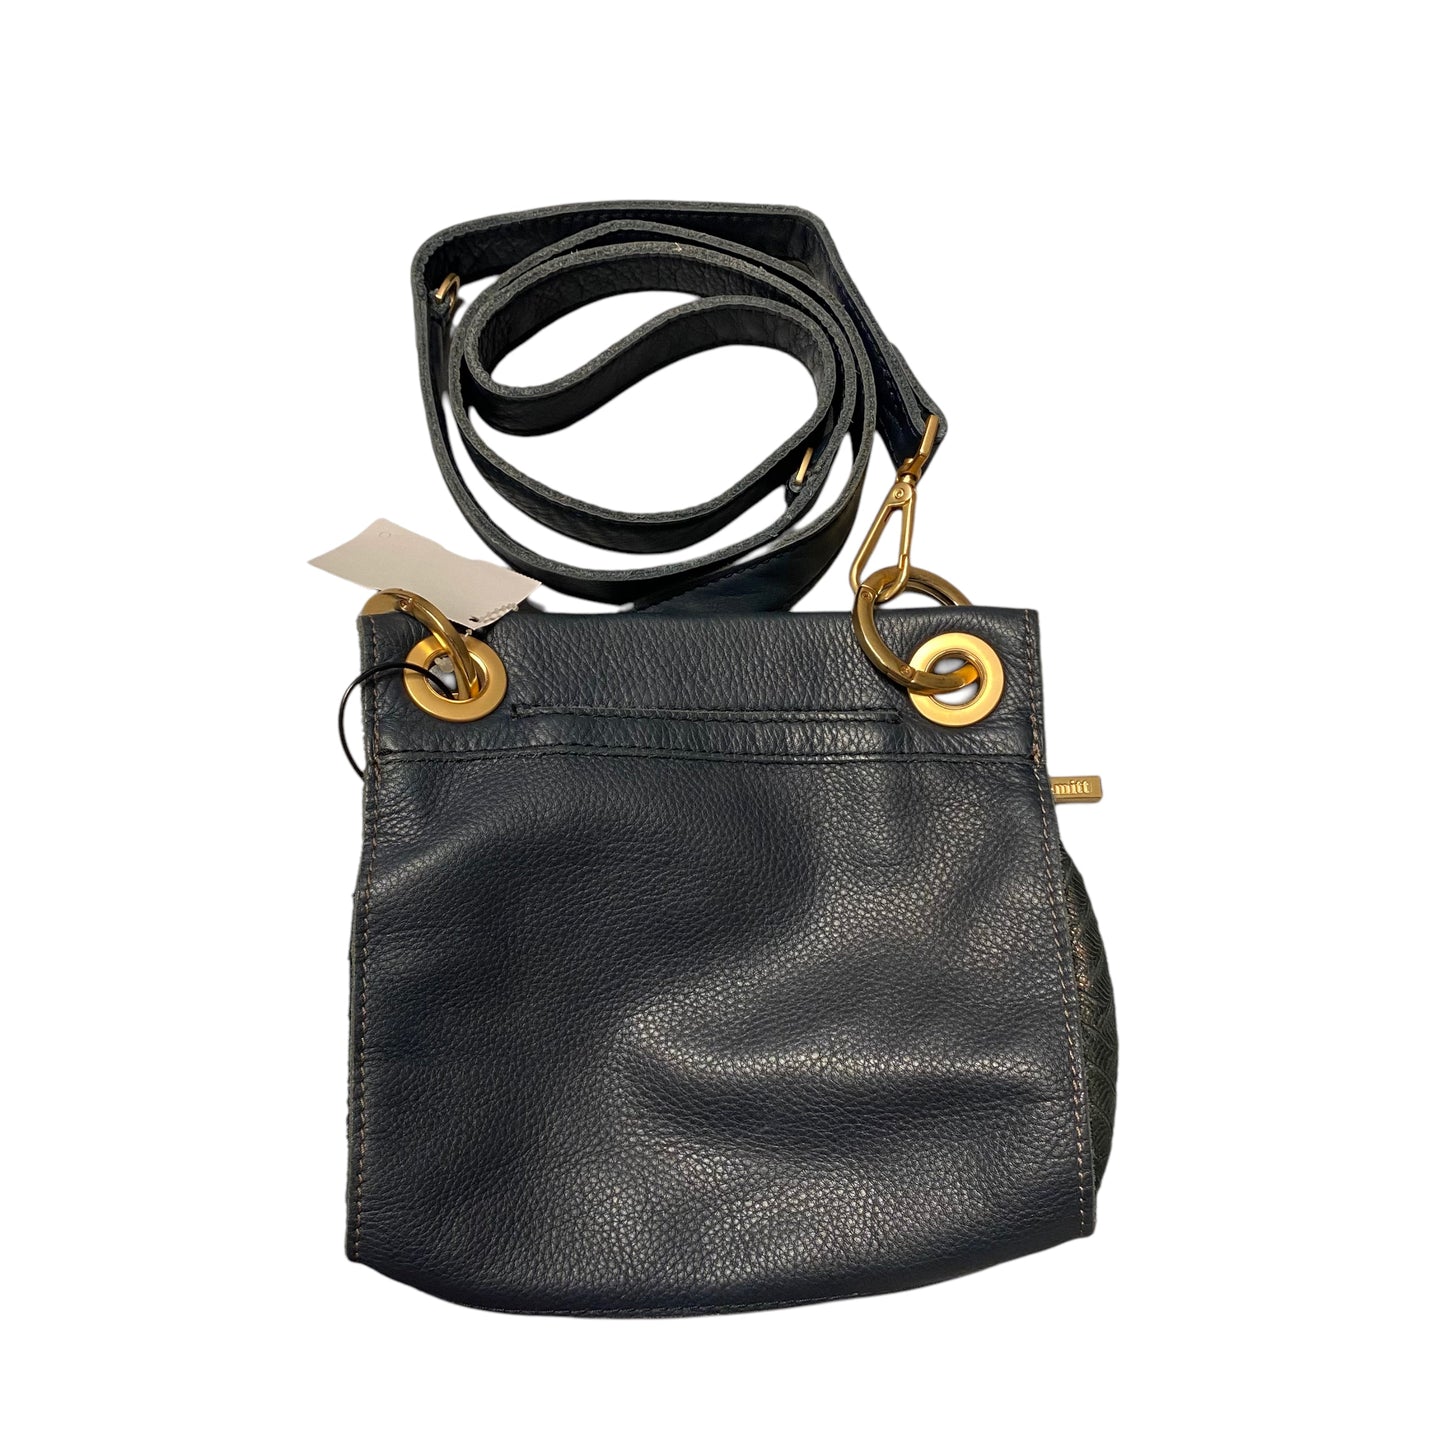 Handbag Designer By Hammitt  Size: Small